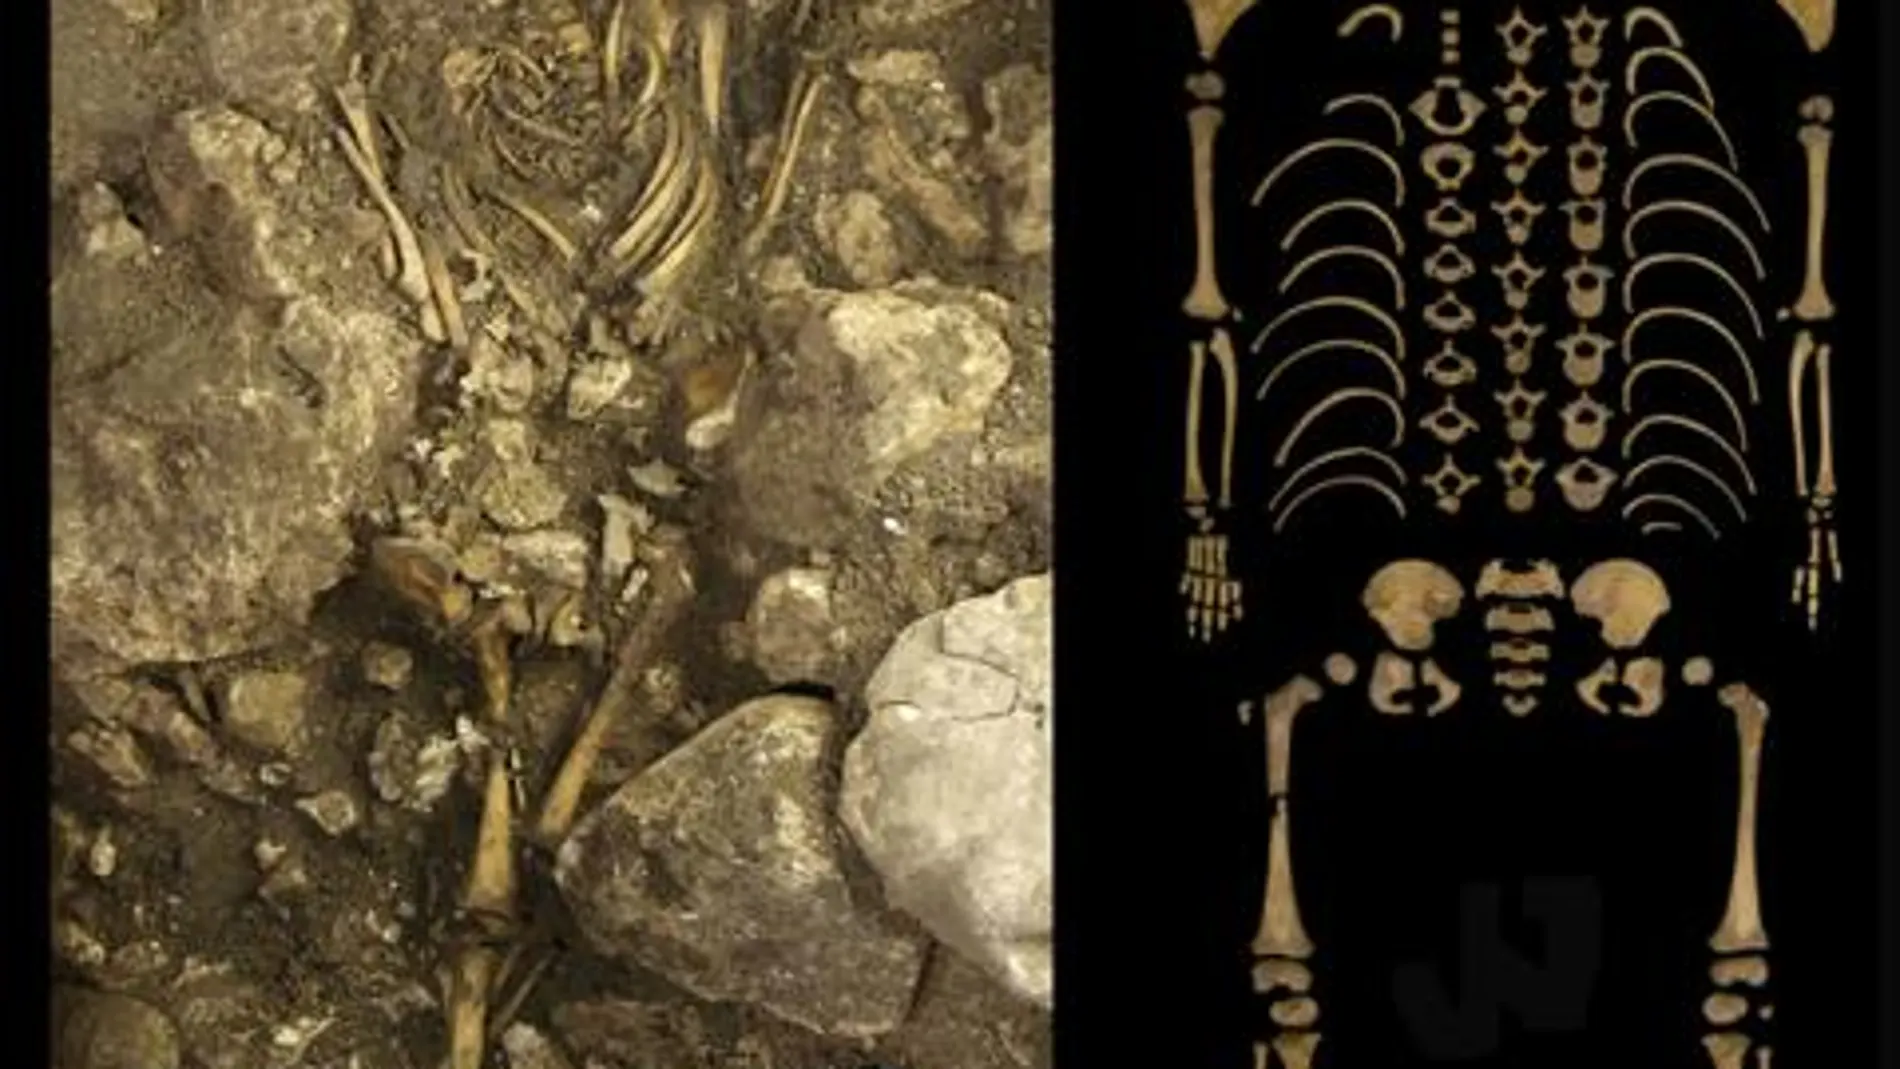 Esqueleto del niño Calcolítico del Portalón durante la excavación (a) y una vez restaurado en el laboratorio (b). La escala representa 10 cm